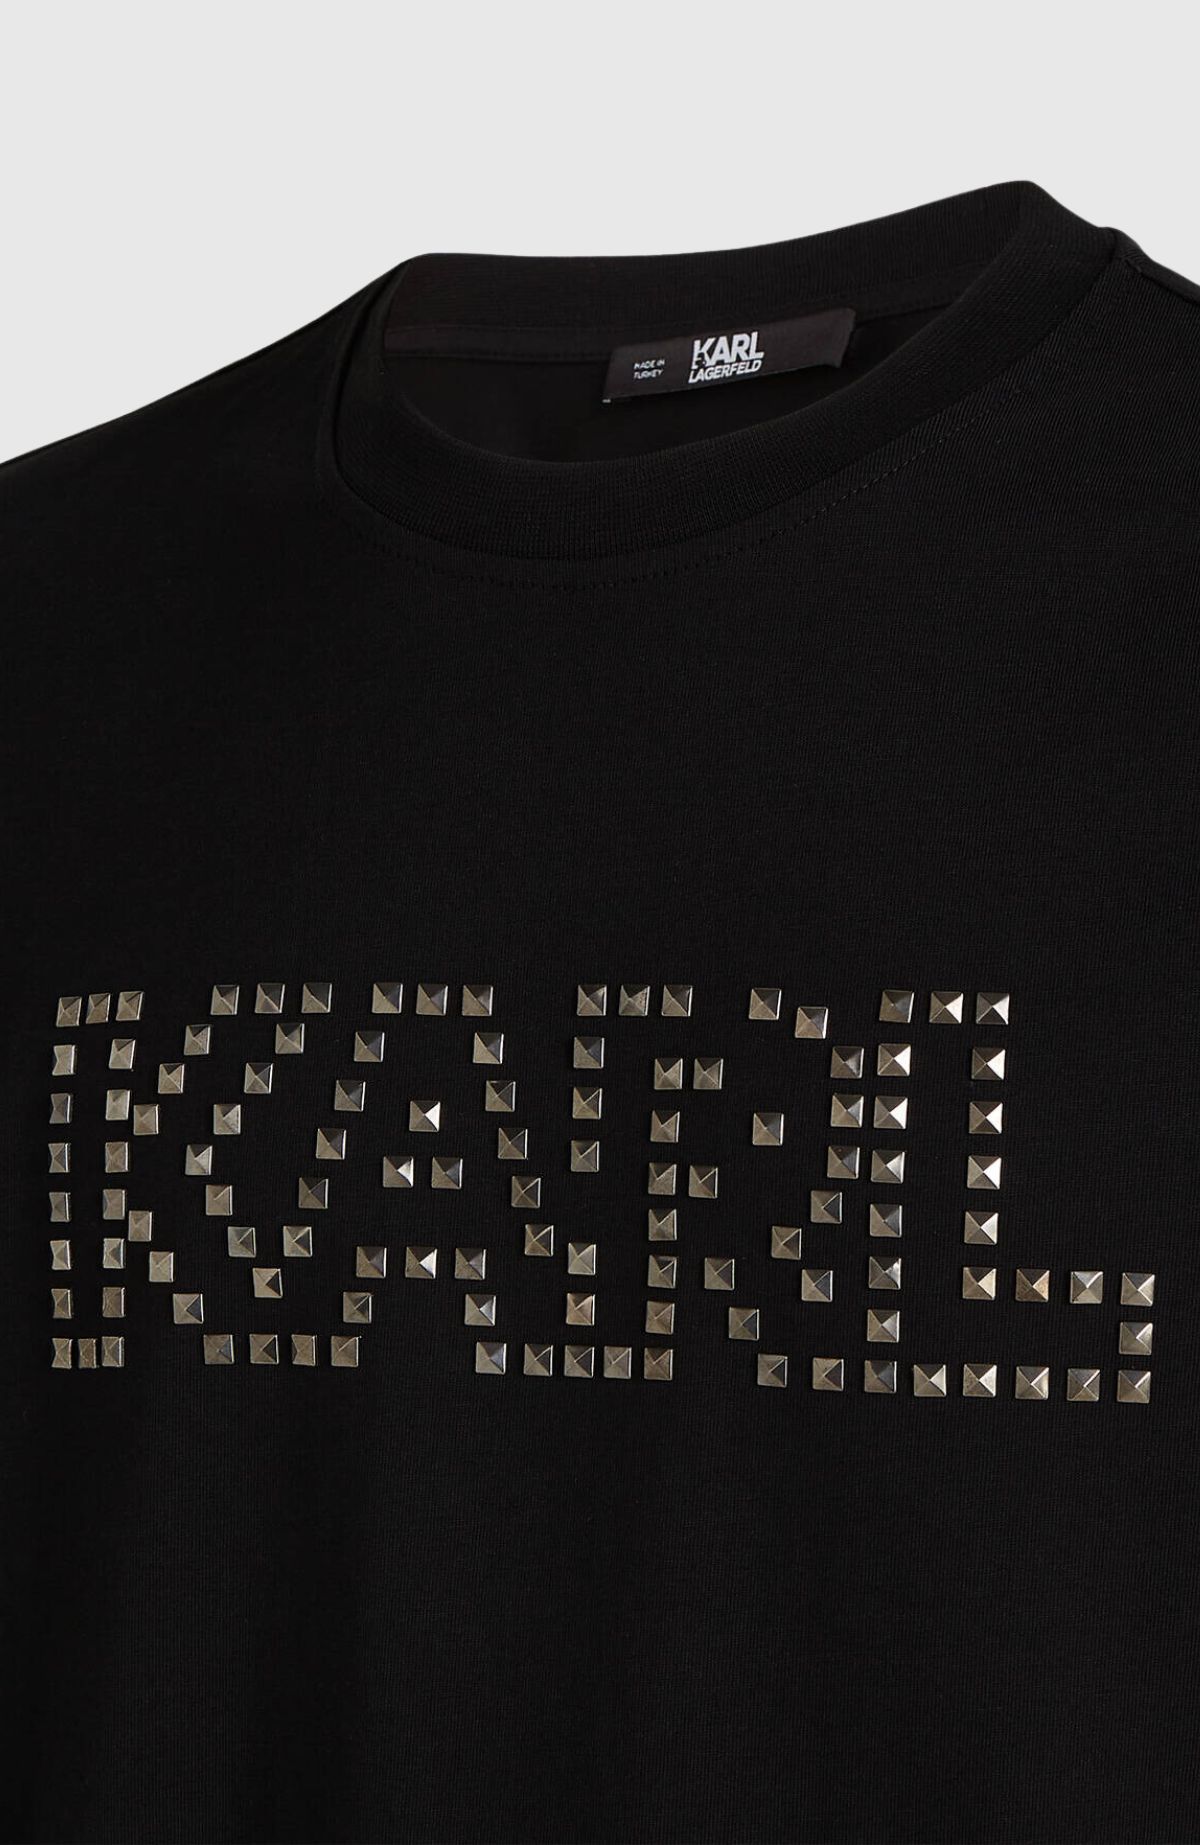 Studded Karl T-Shirt